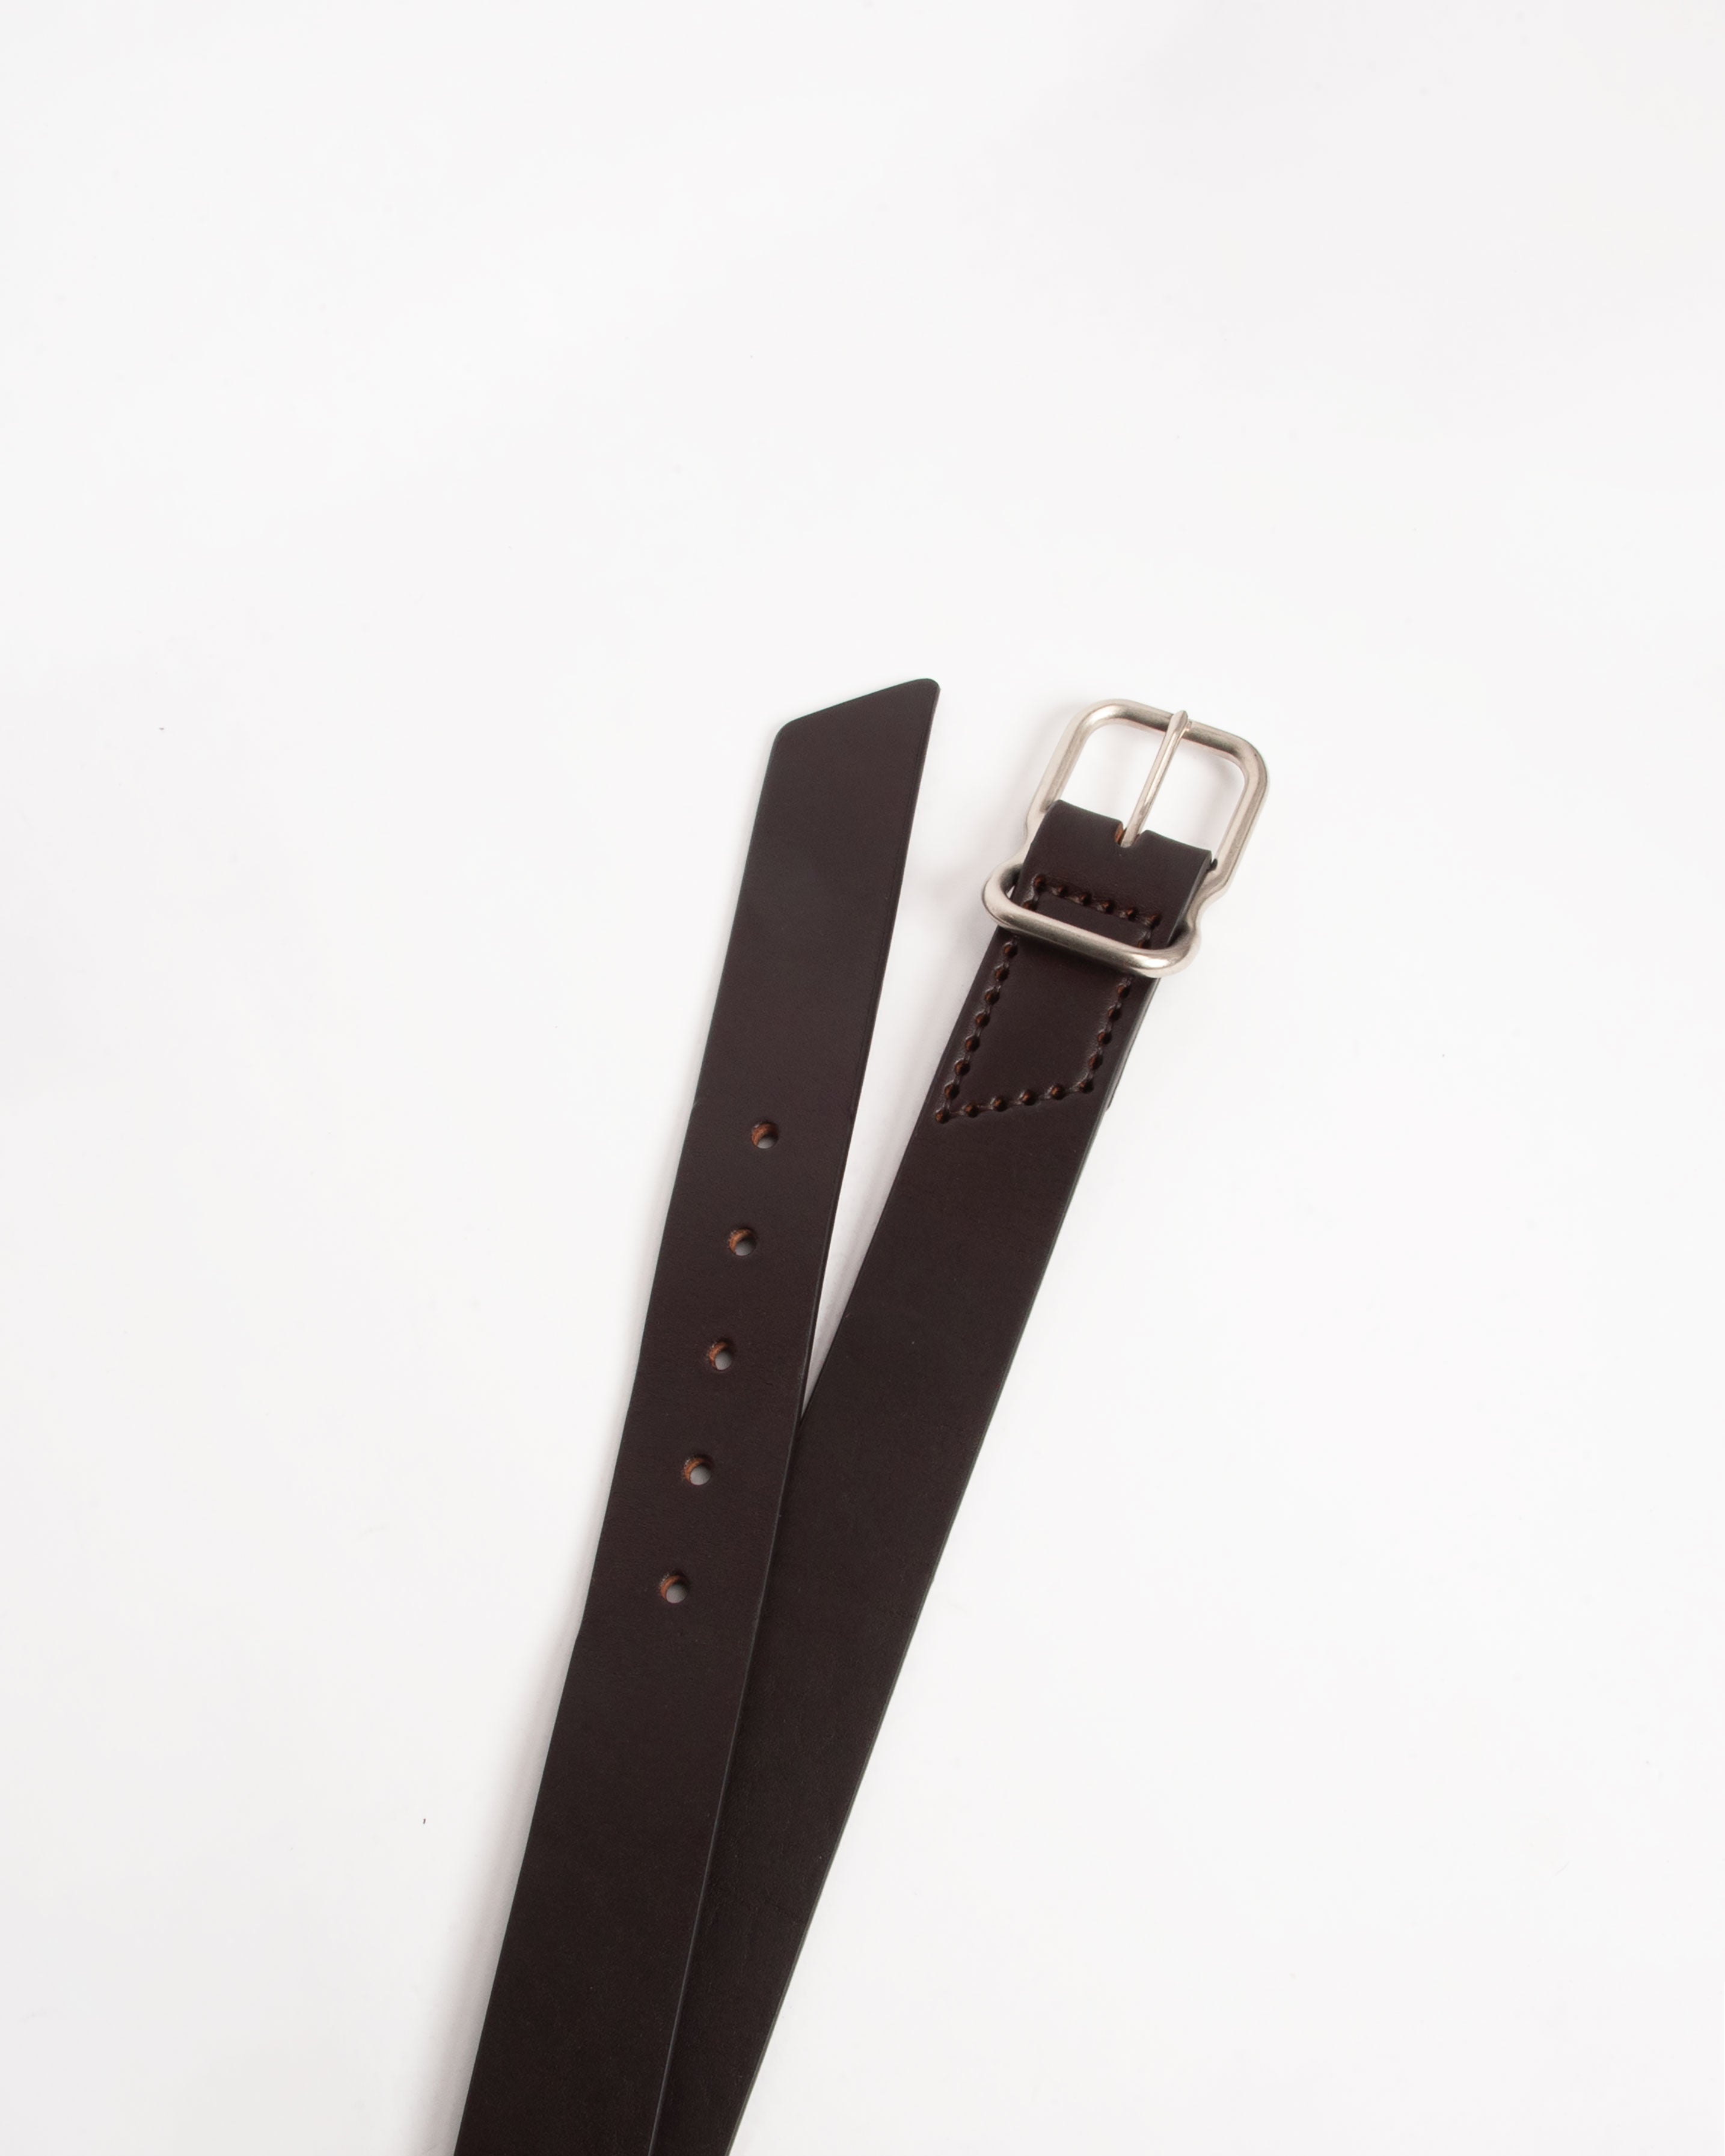 112 Signature Leather Belt - Dark Brown - Nickel